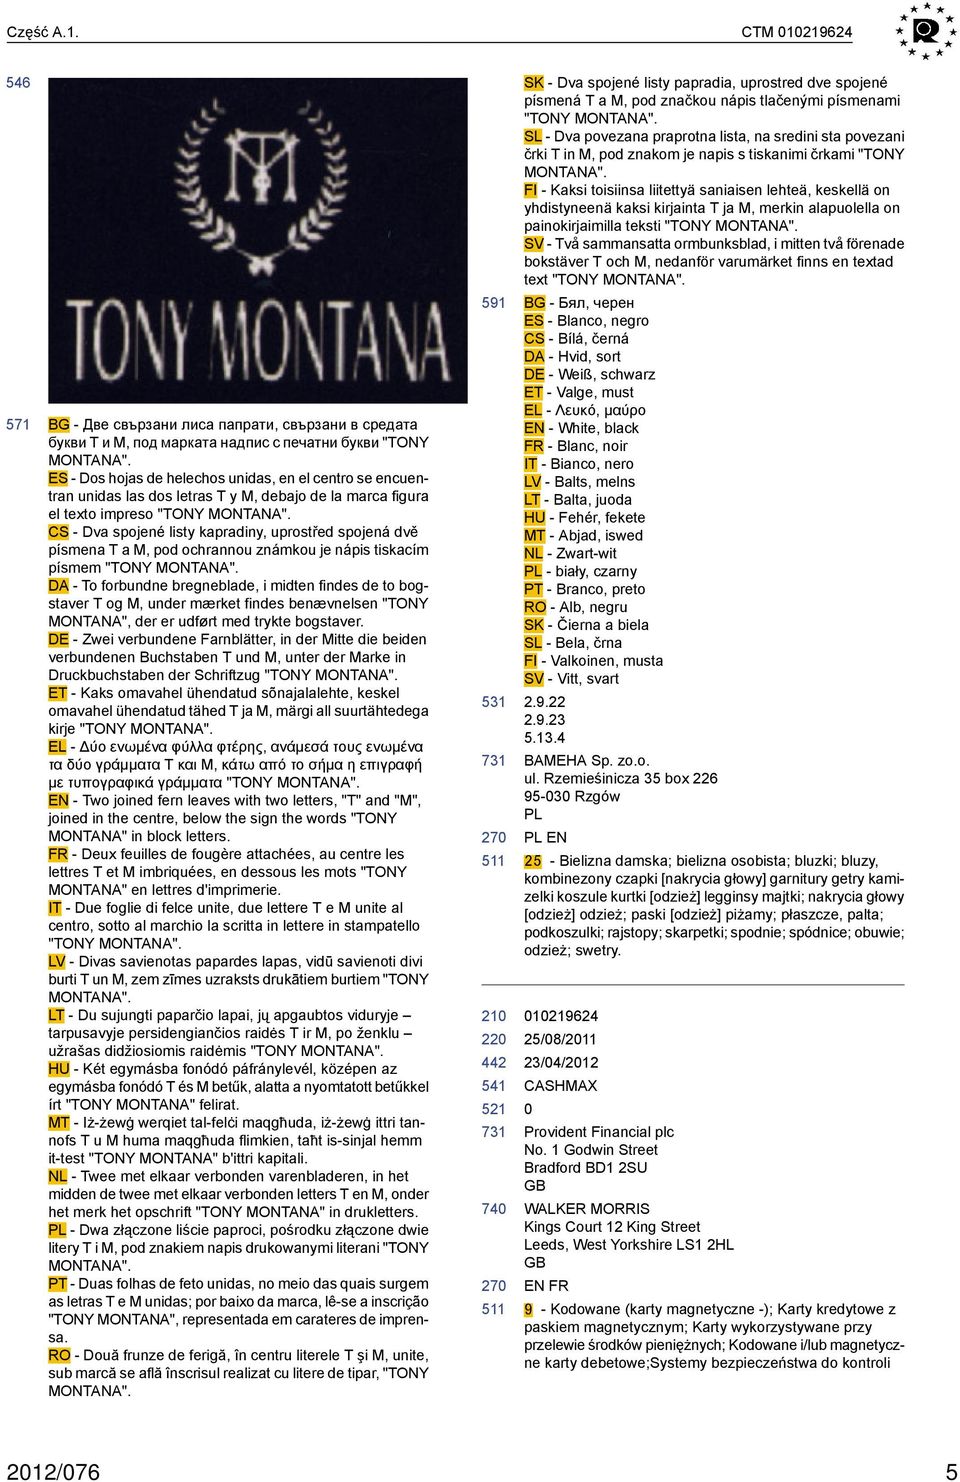 CS - Dva spojené listy kapradiny, uprostřed spojená dvě písmena T a M, pod ochrannou známkou je nápis tiskacím písmem "TONY MONTANA".